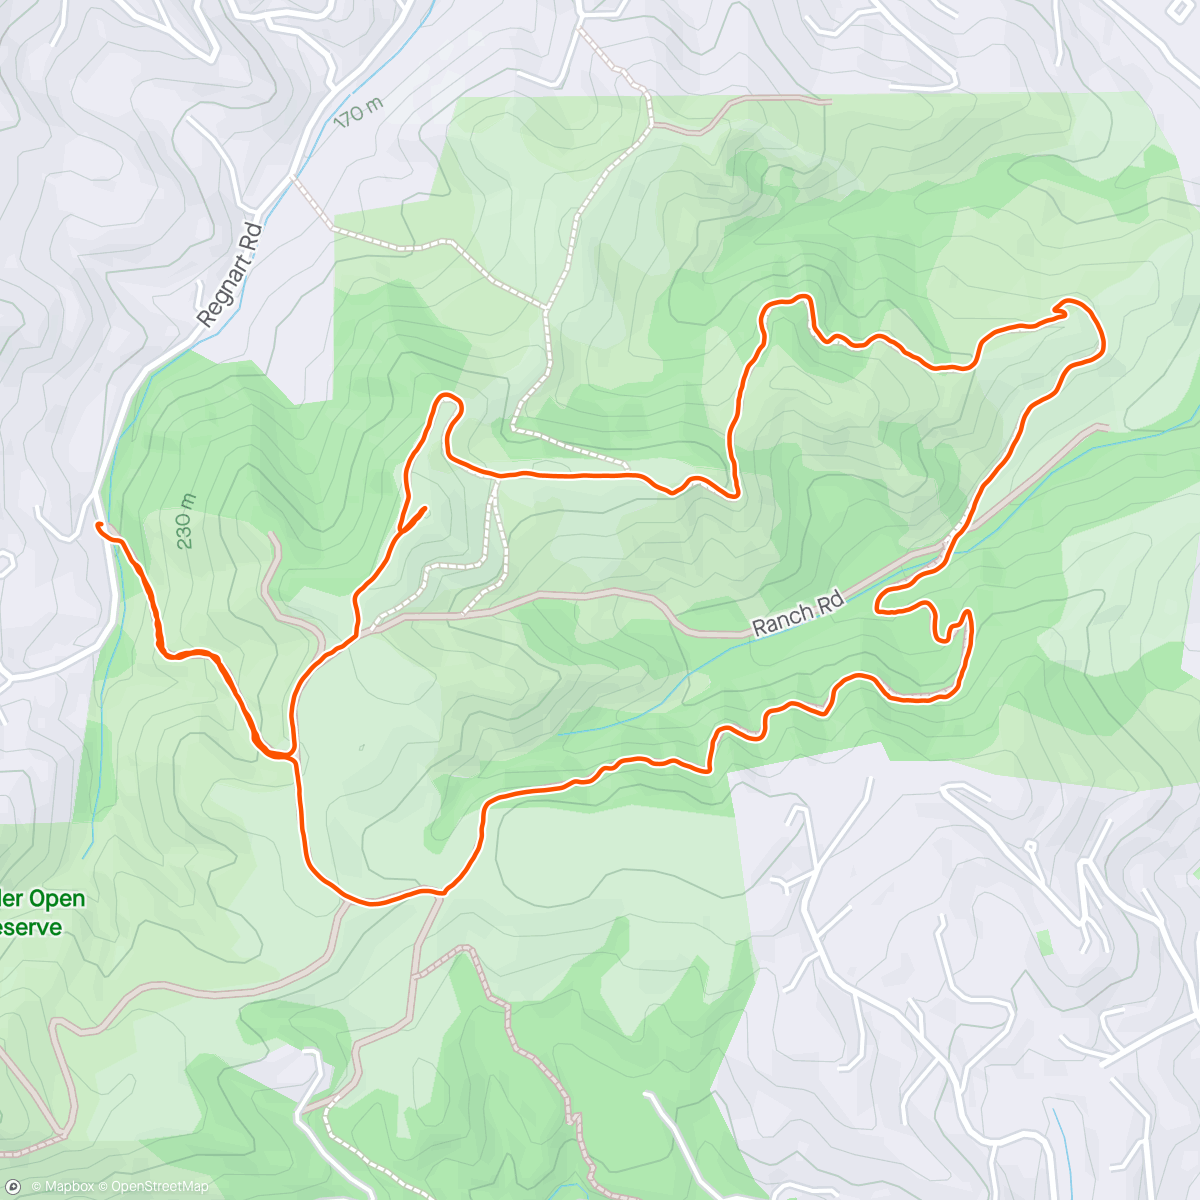 「Fremont Older Hike」活動的地圖